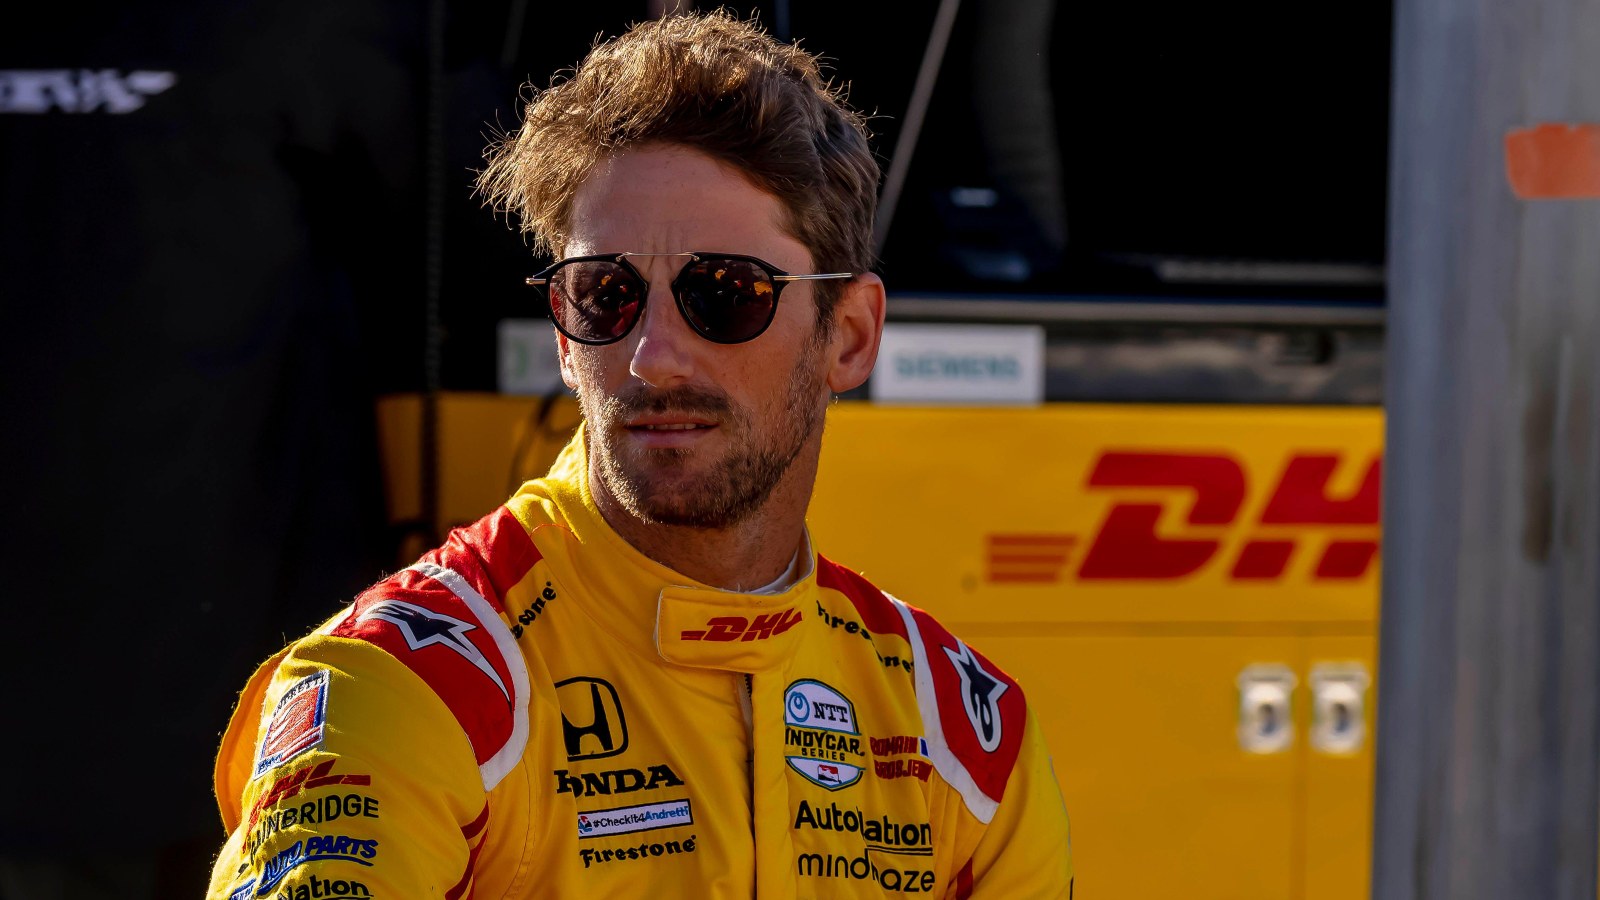 Romain Grosjean wearing sunglasses. Texas, March 2022.